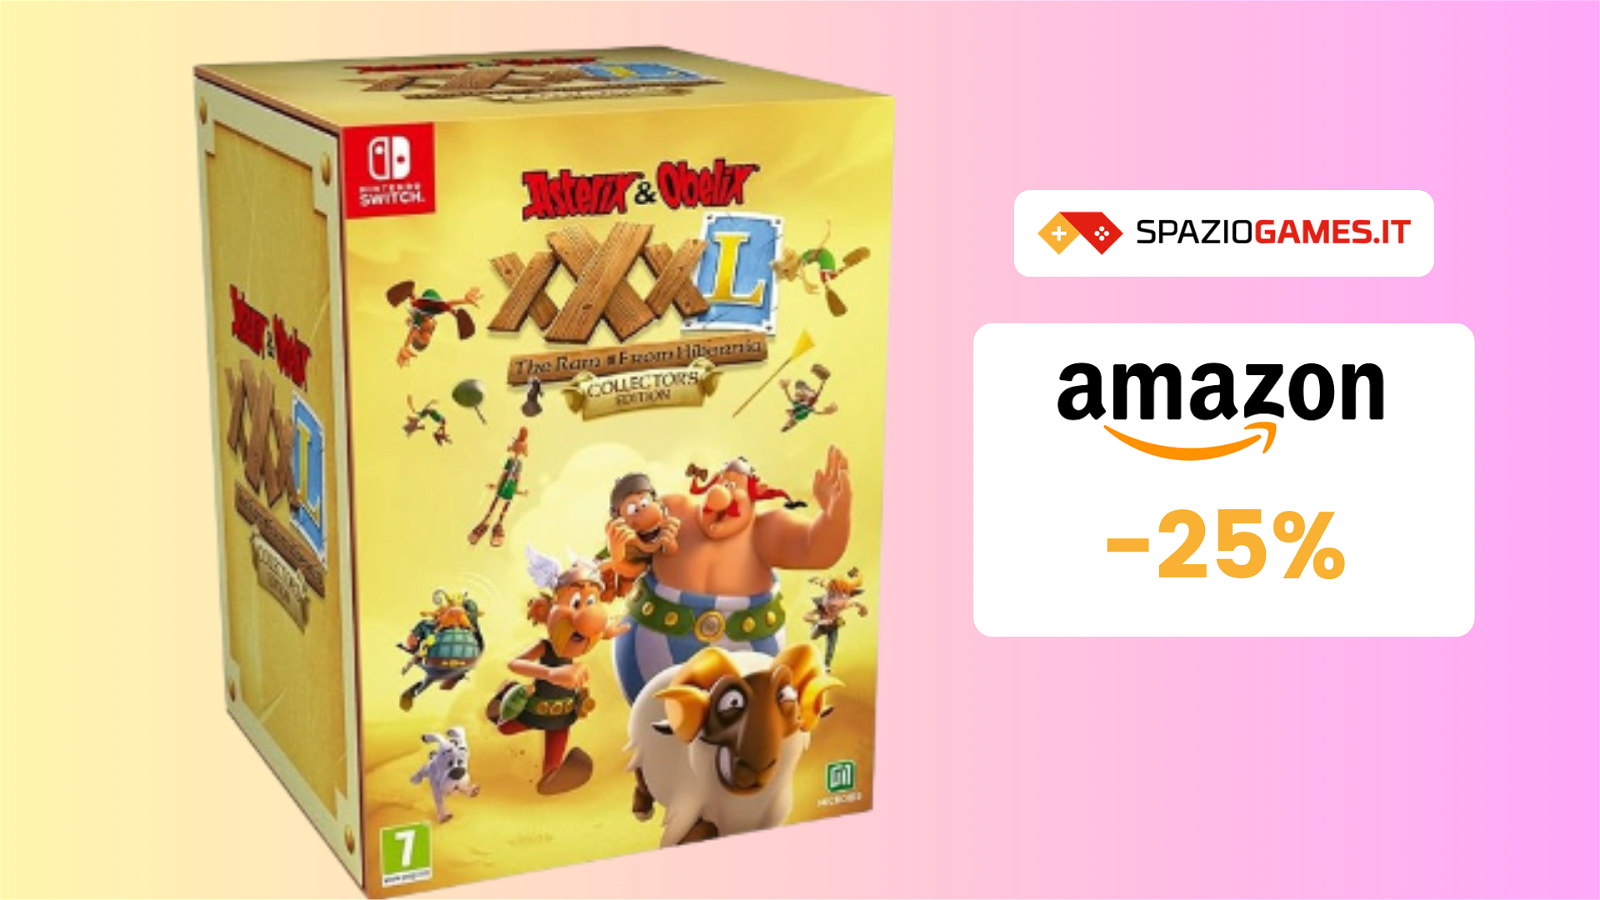 Edizione speciale per Asterix & Obelix XXXL The Ram From Hibernia a 67€!